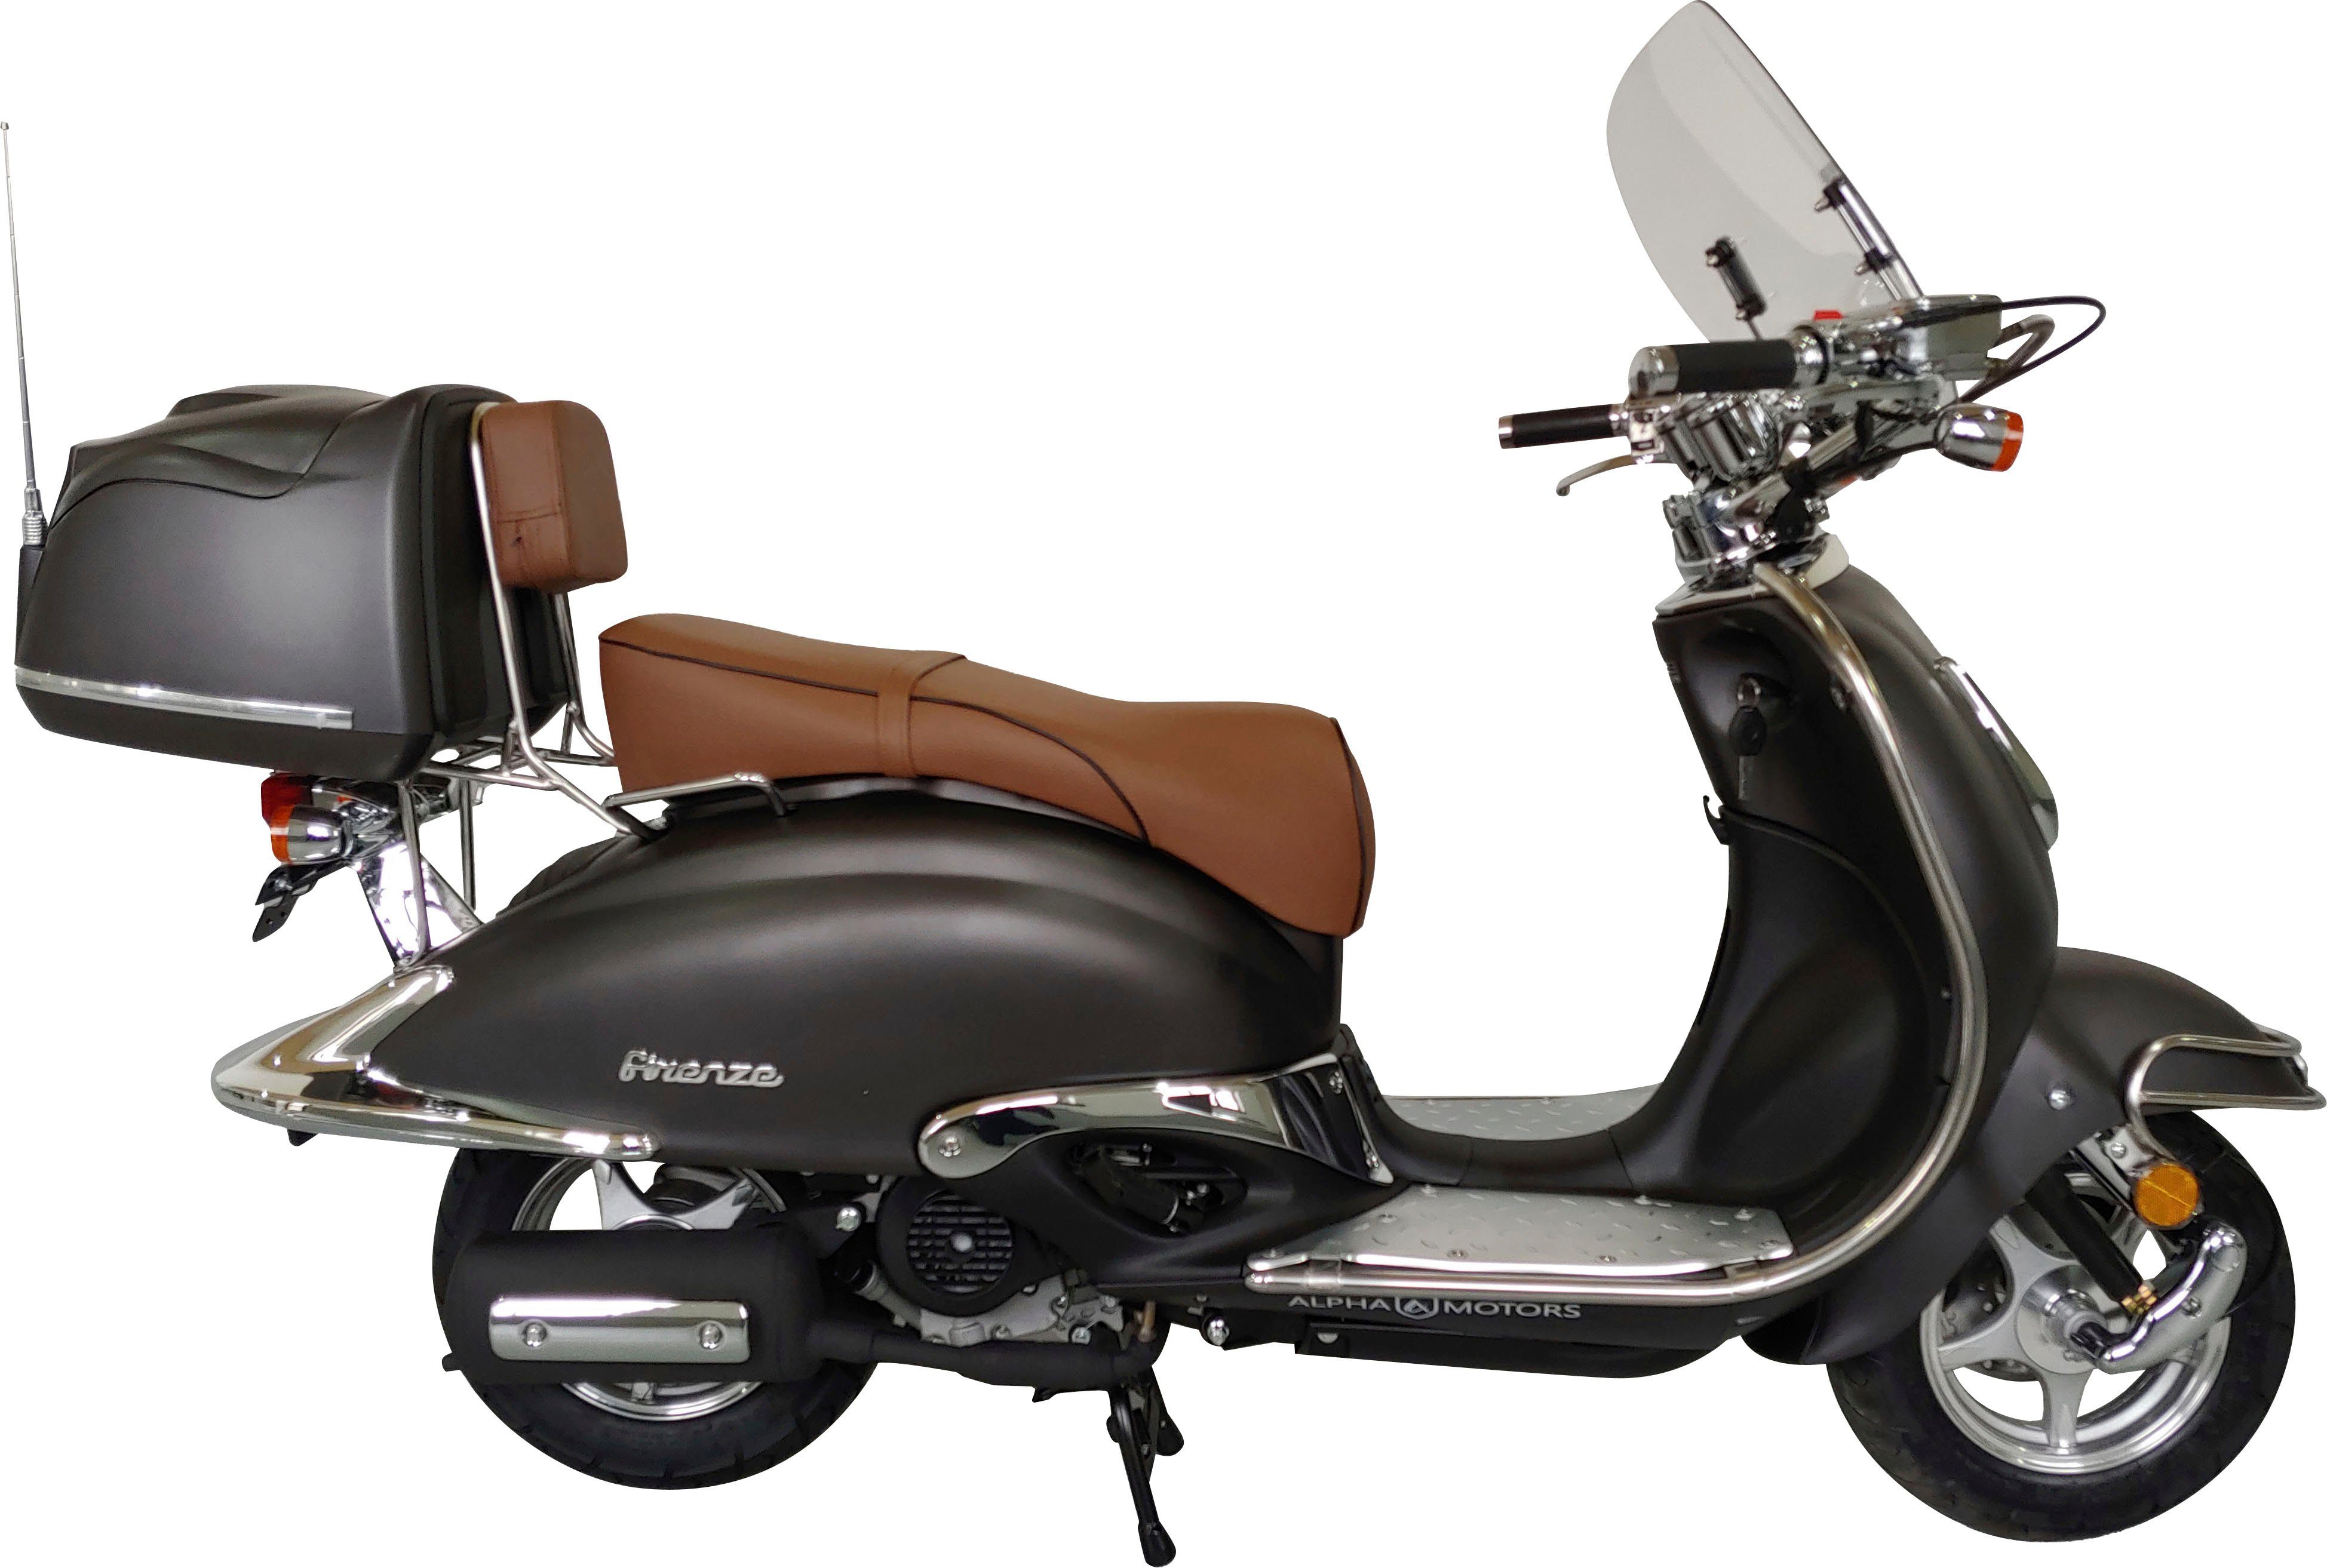 ccm, Firenze km/h, braun Motors Limited, mattschwarz Alpha Motorroller 5 50 Euro 45 |